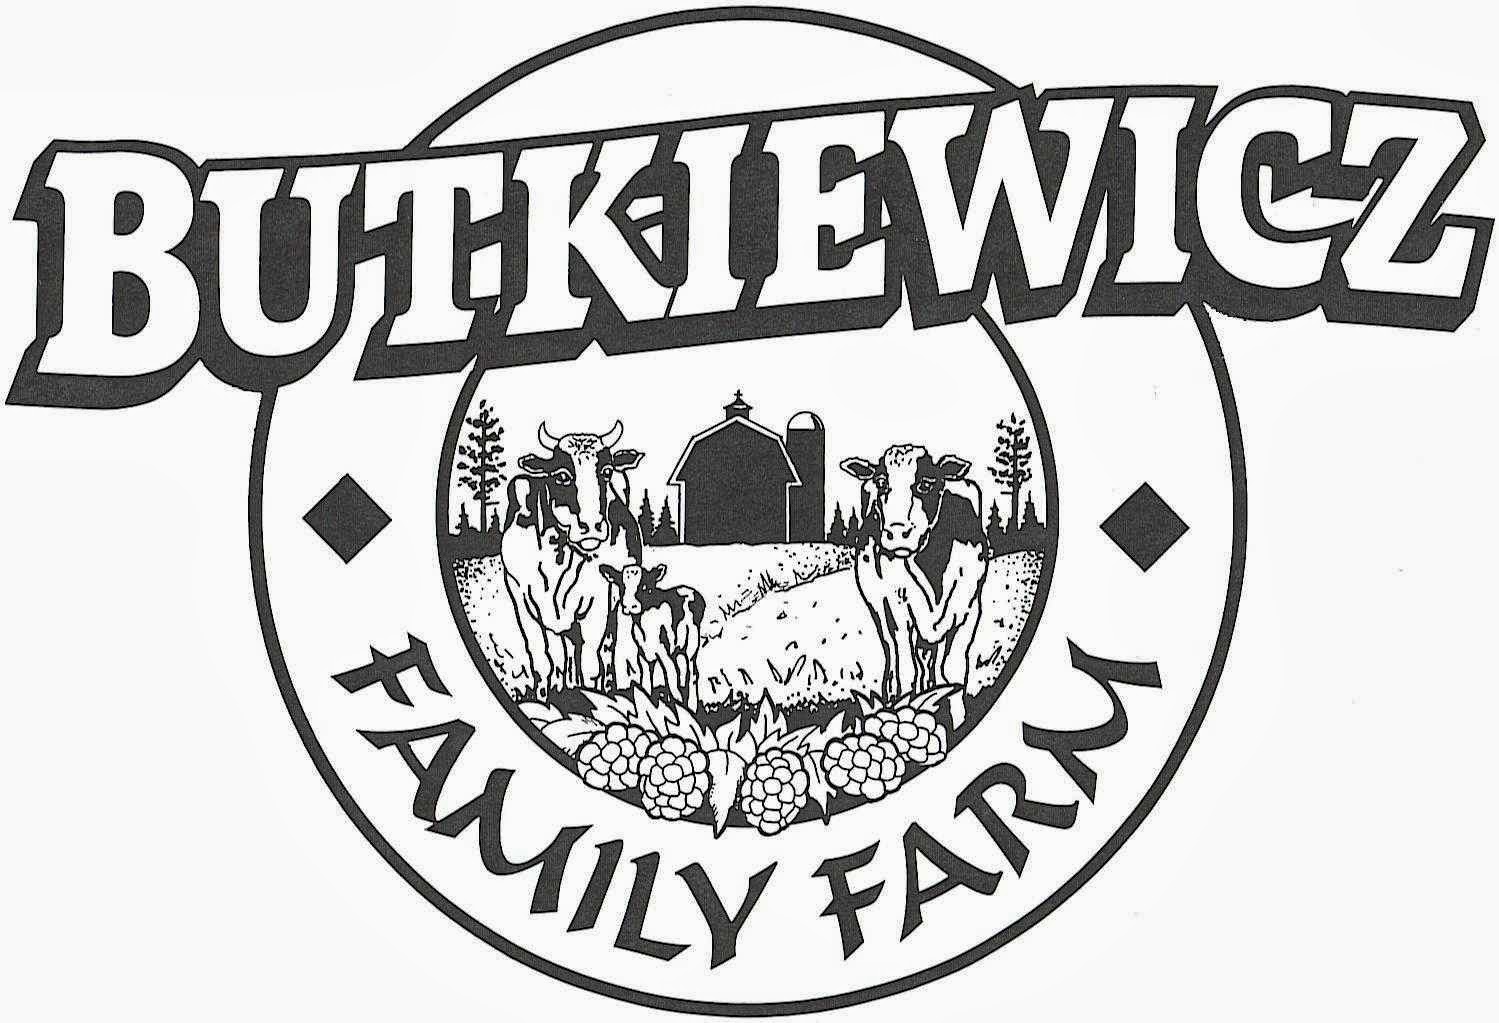 Butkiewicz Family Farm 6710 Butkiewicz Rd, Kettle River Minnesota 55757